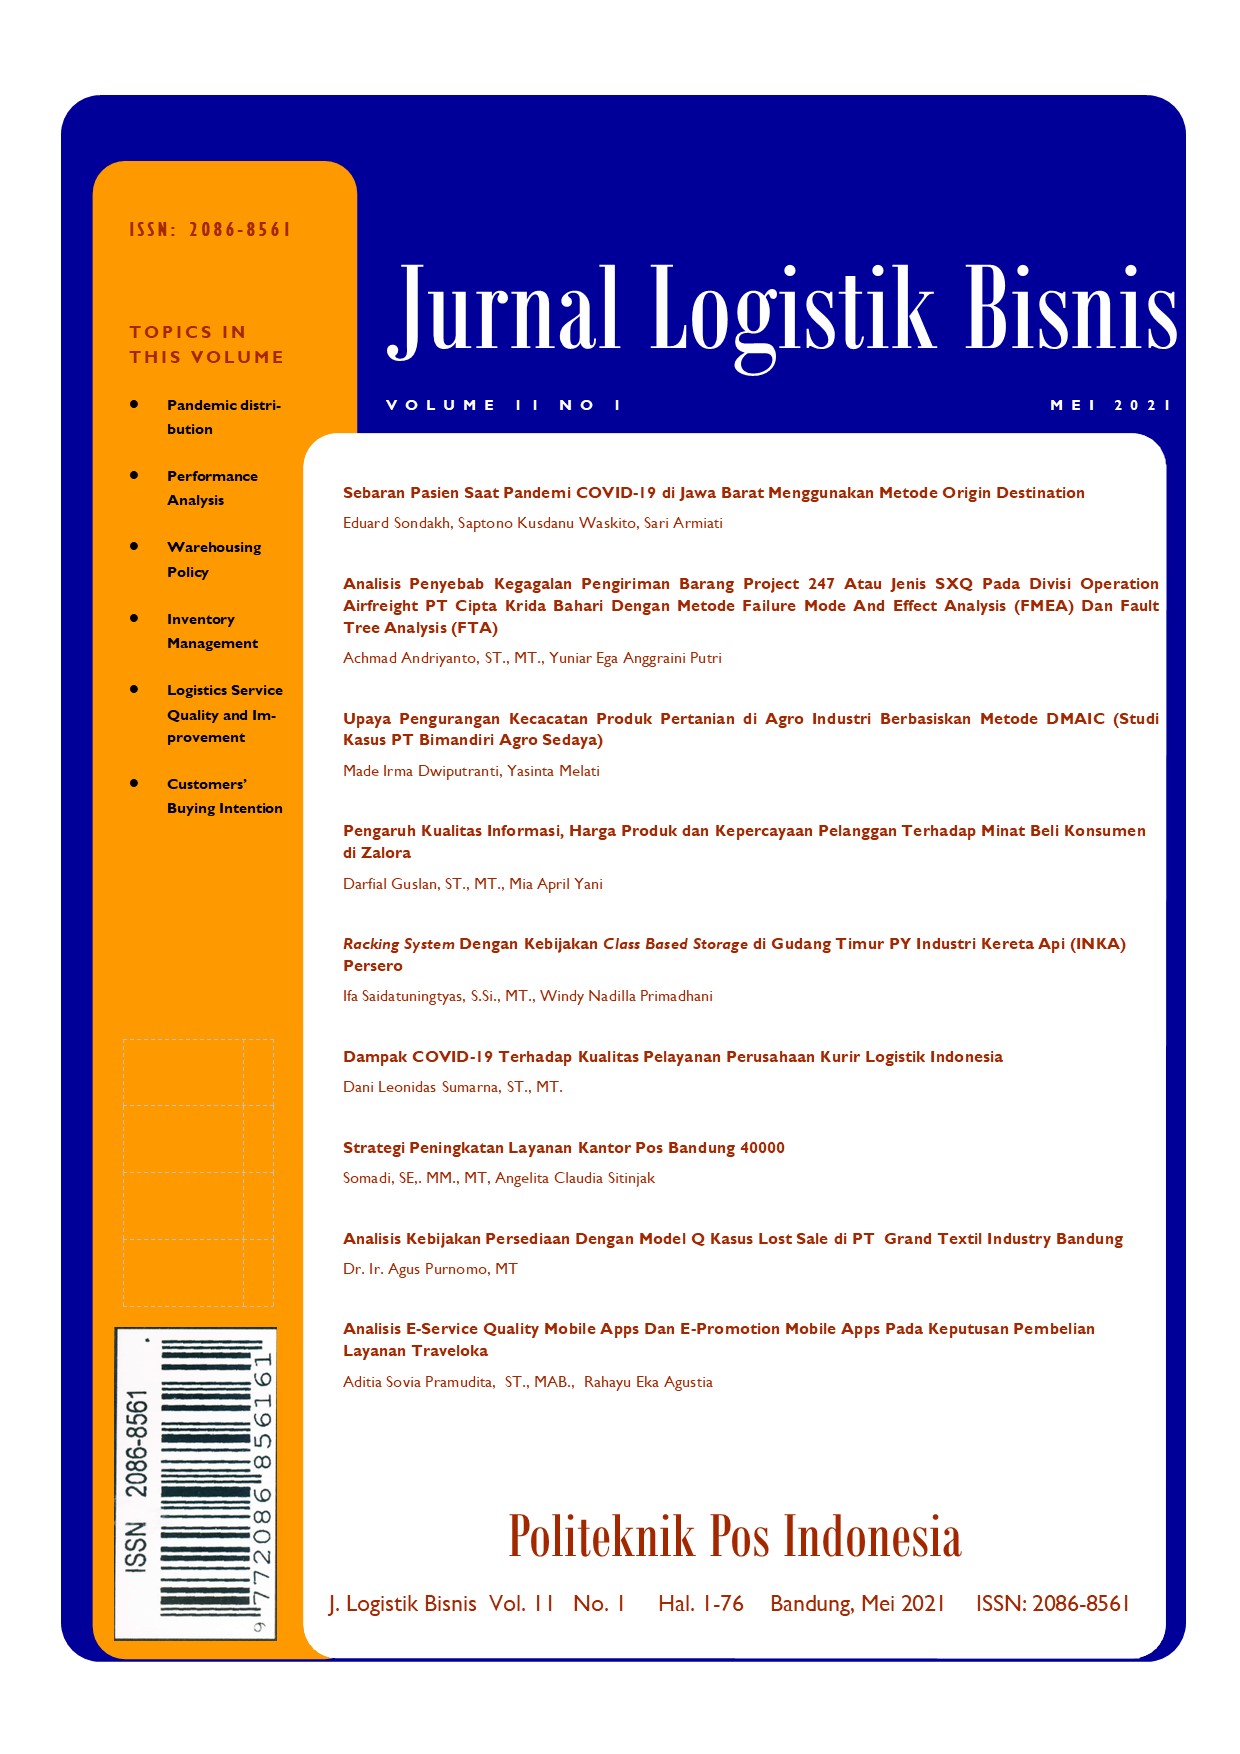 Jurnal Logistik Bisnis Vol. 11 No. 01 Mei 2021